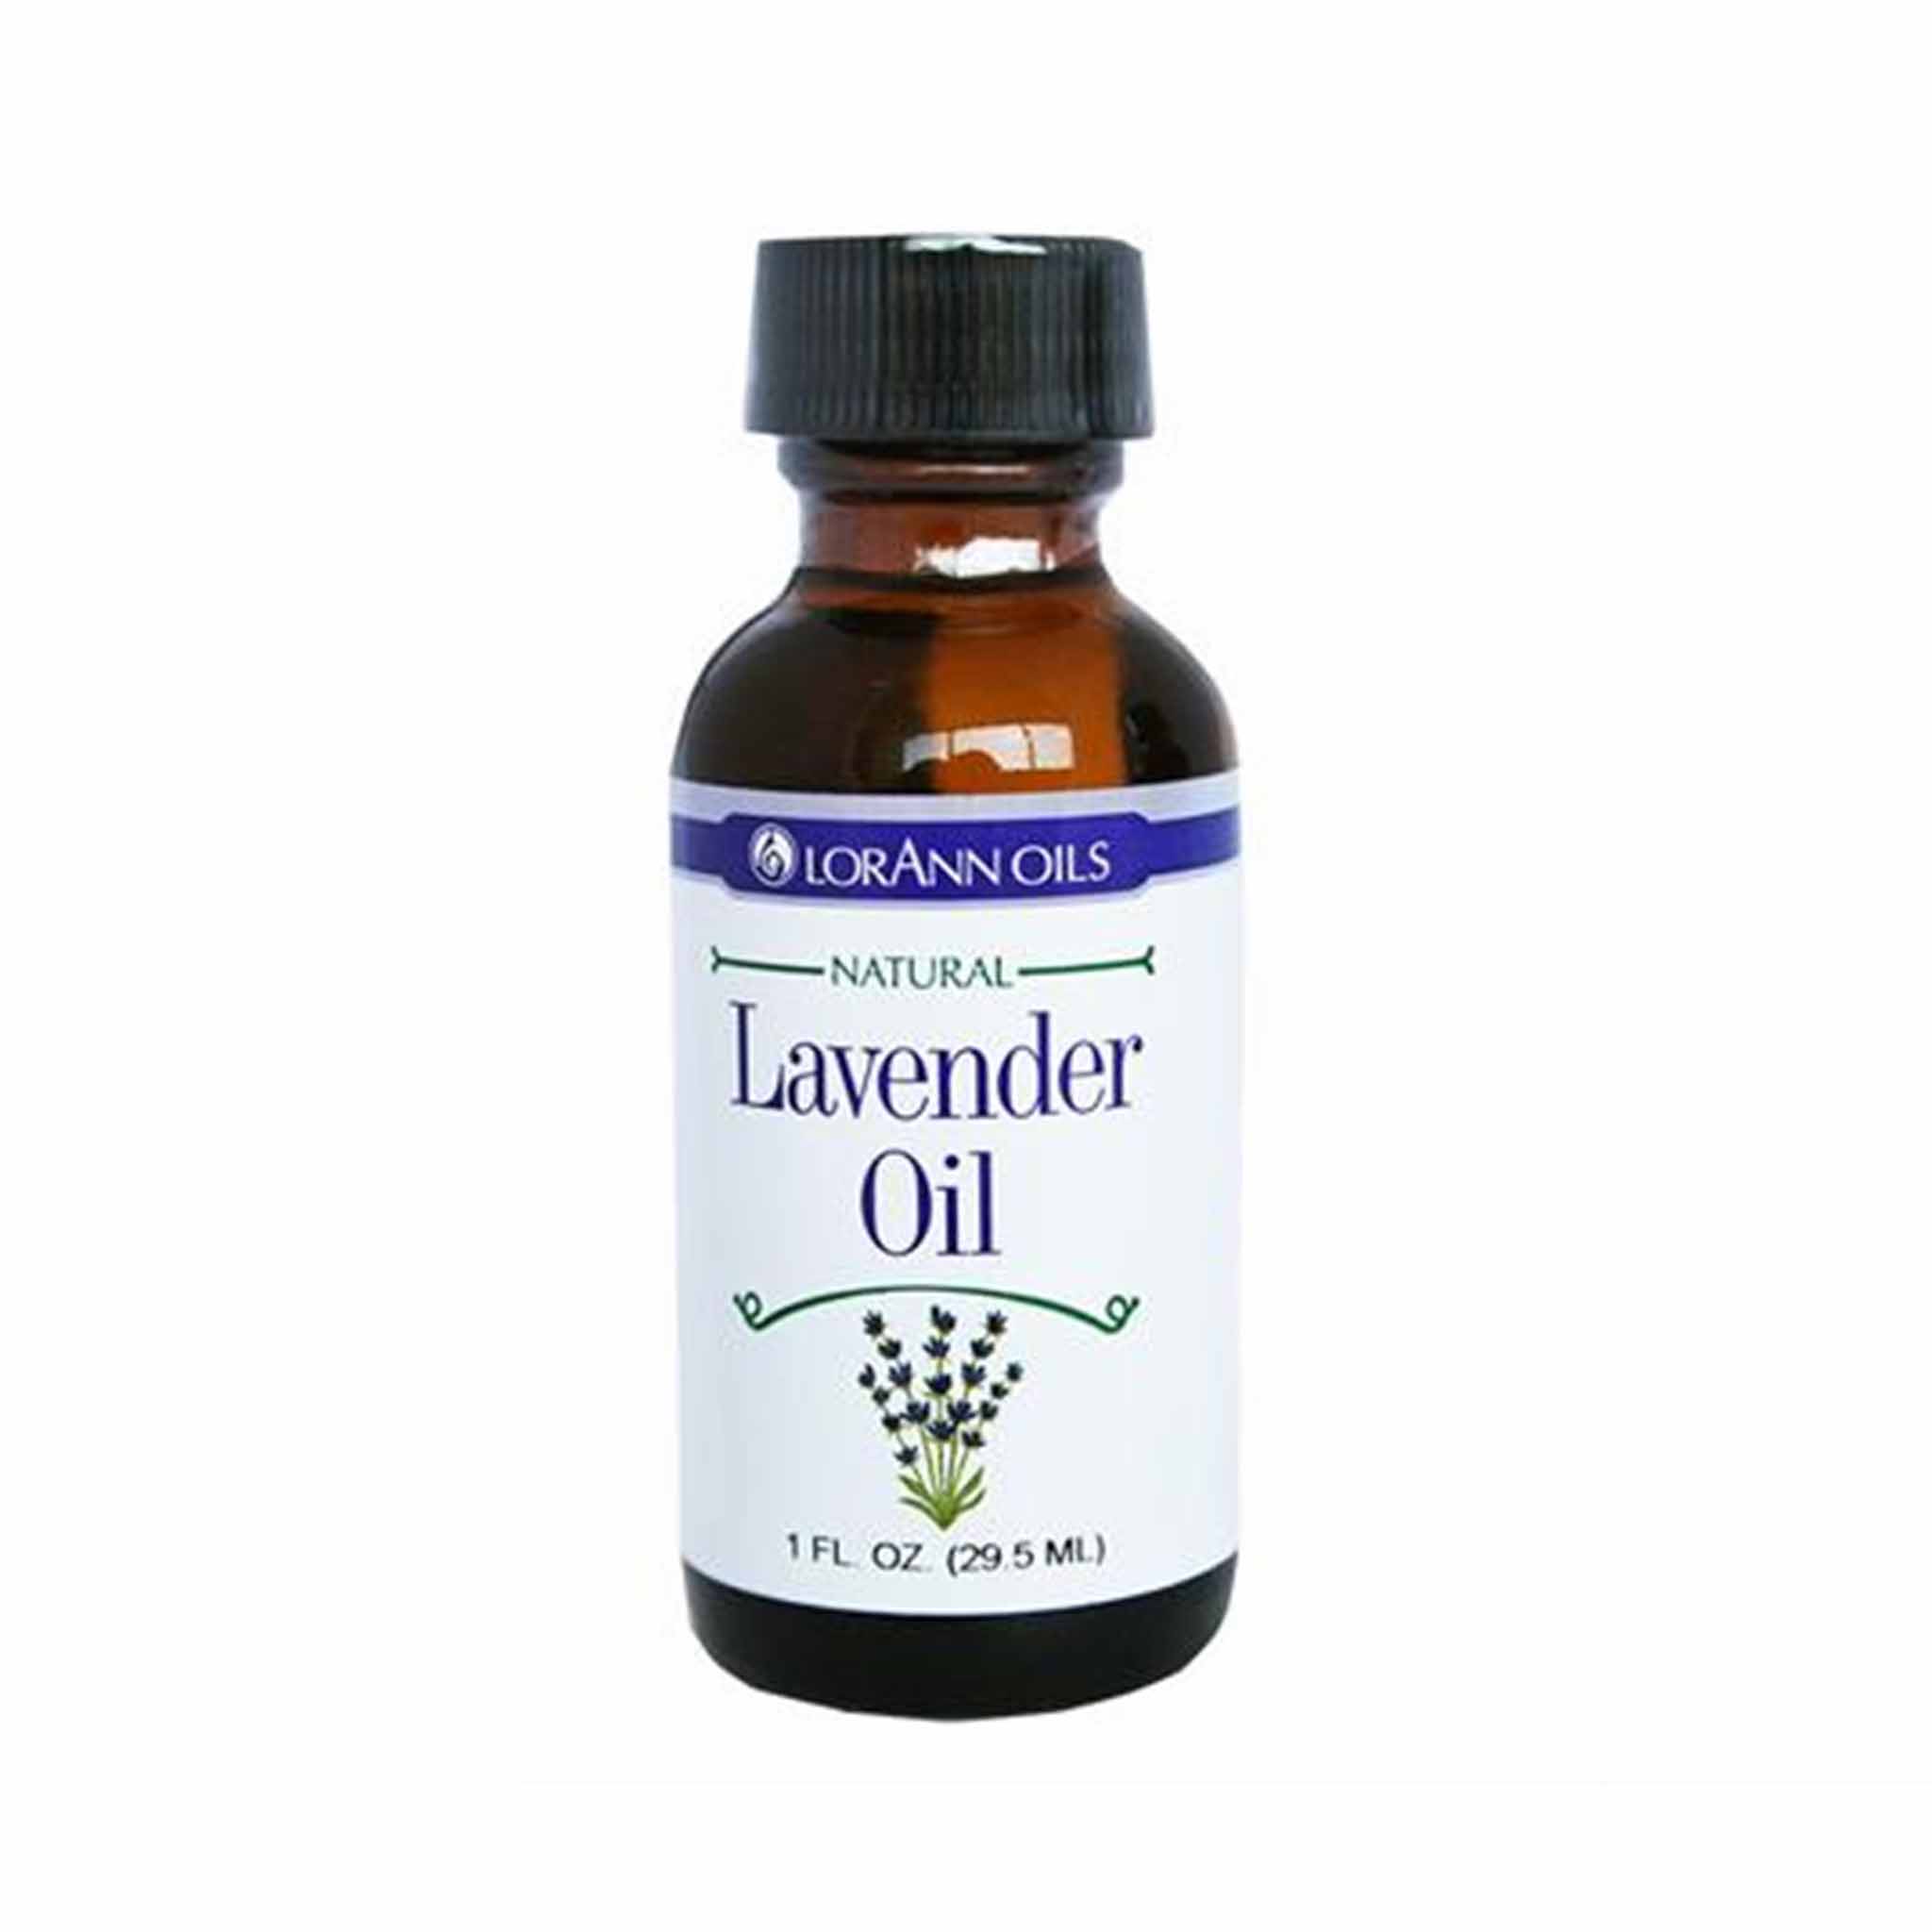 Lavender Oil for Baking